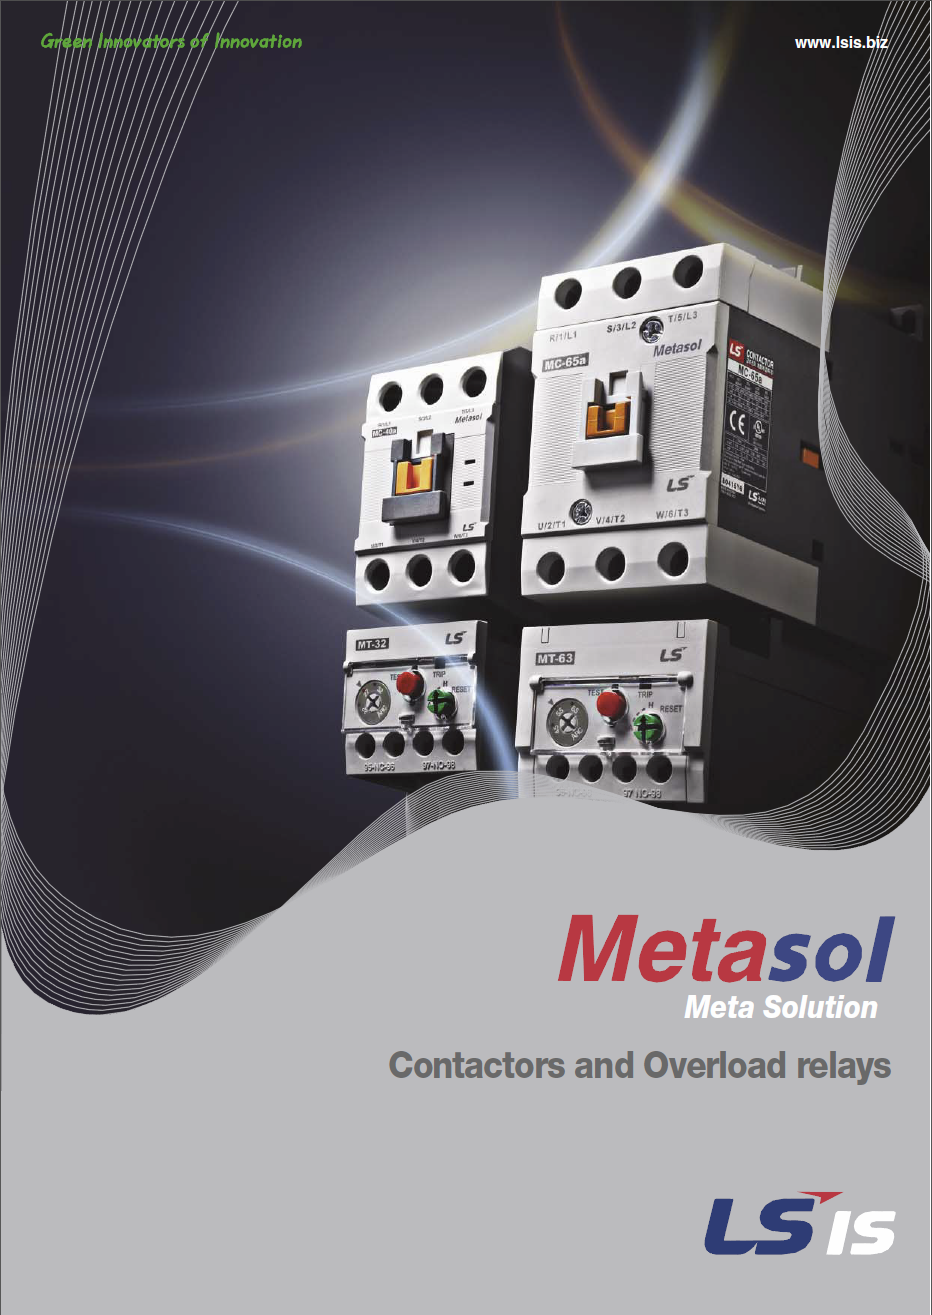 Ls metasol contactor catalogue cover[1]